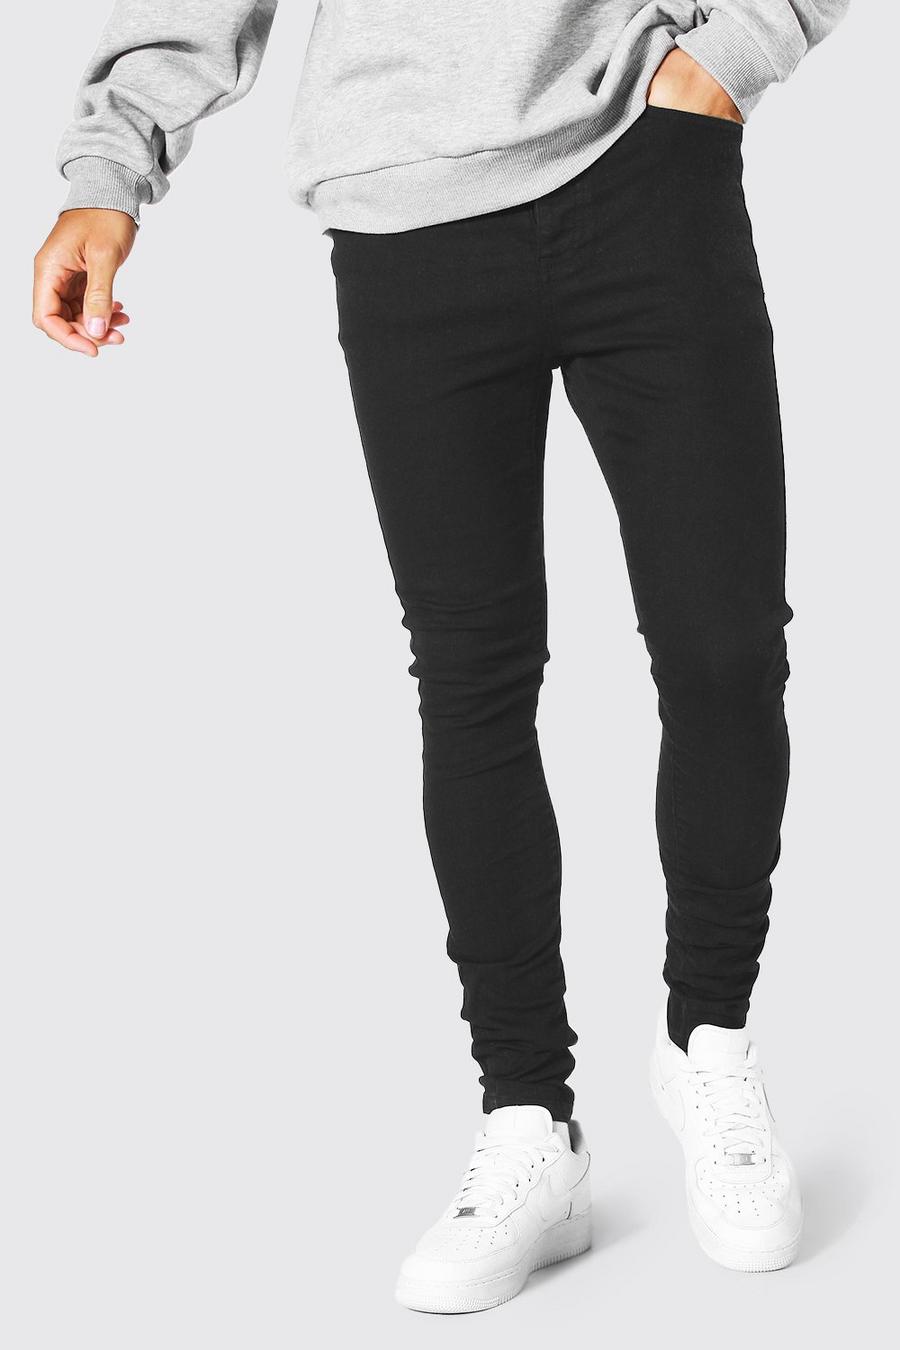 שחור אמיתי ג'ינס עם כותנה ממוחזרת בגזרת סופר סקיני, לגברים גבוהים